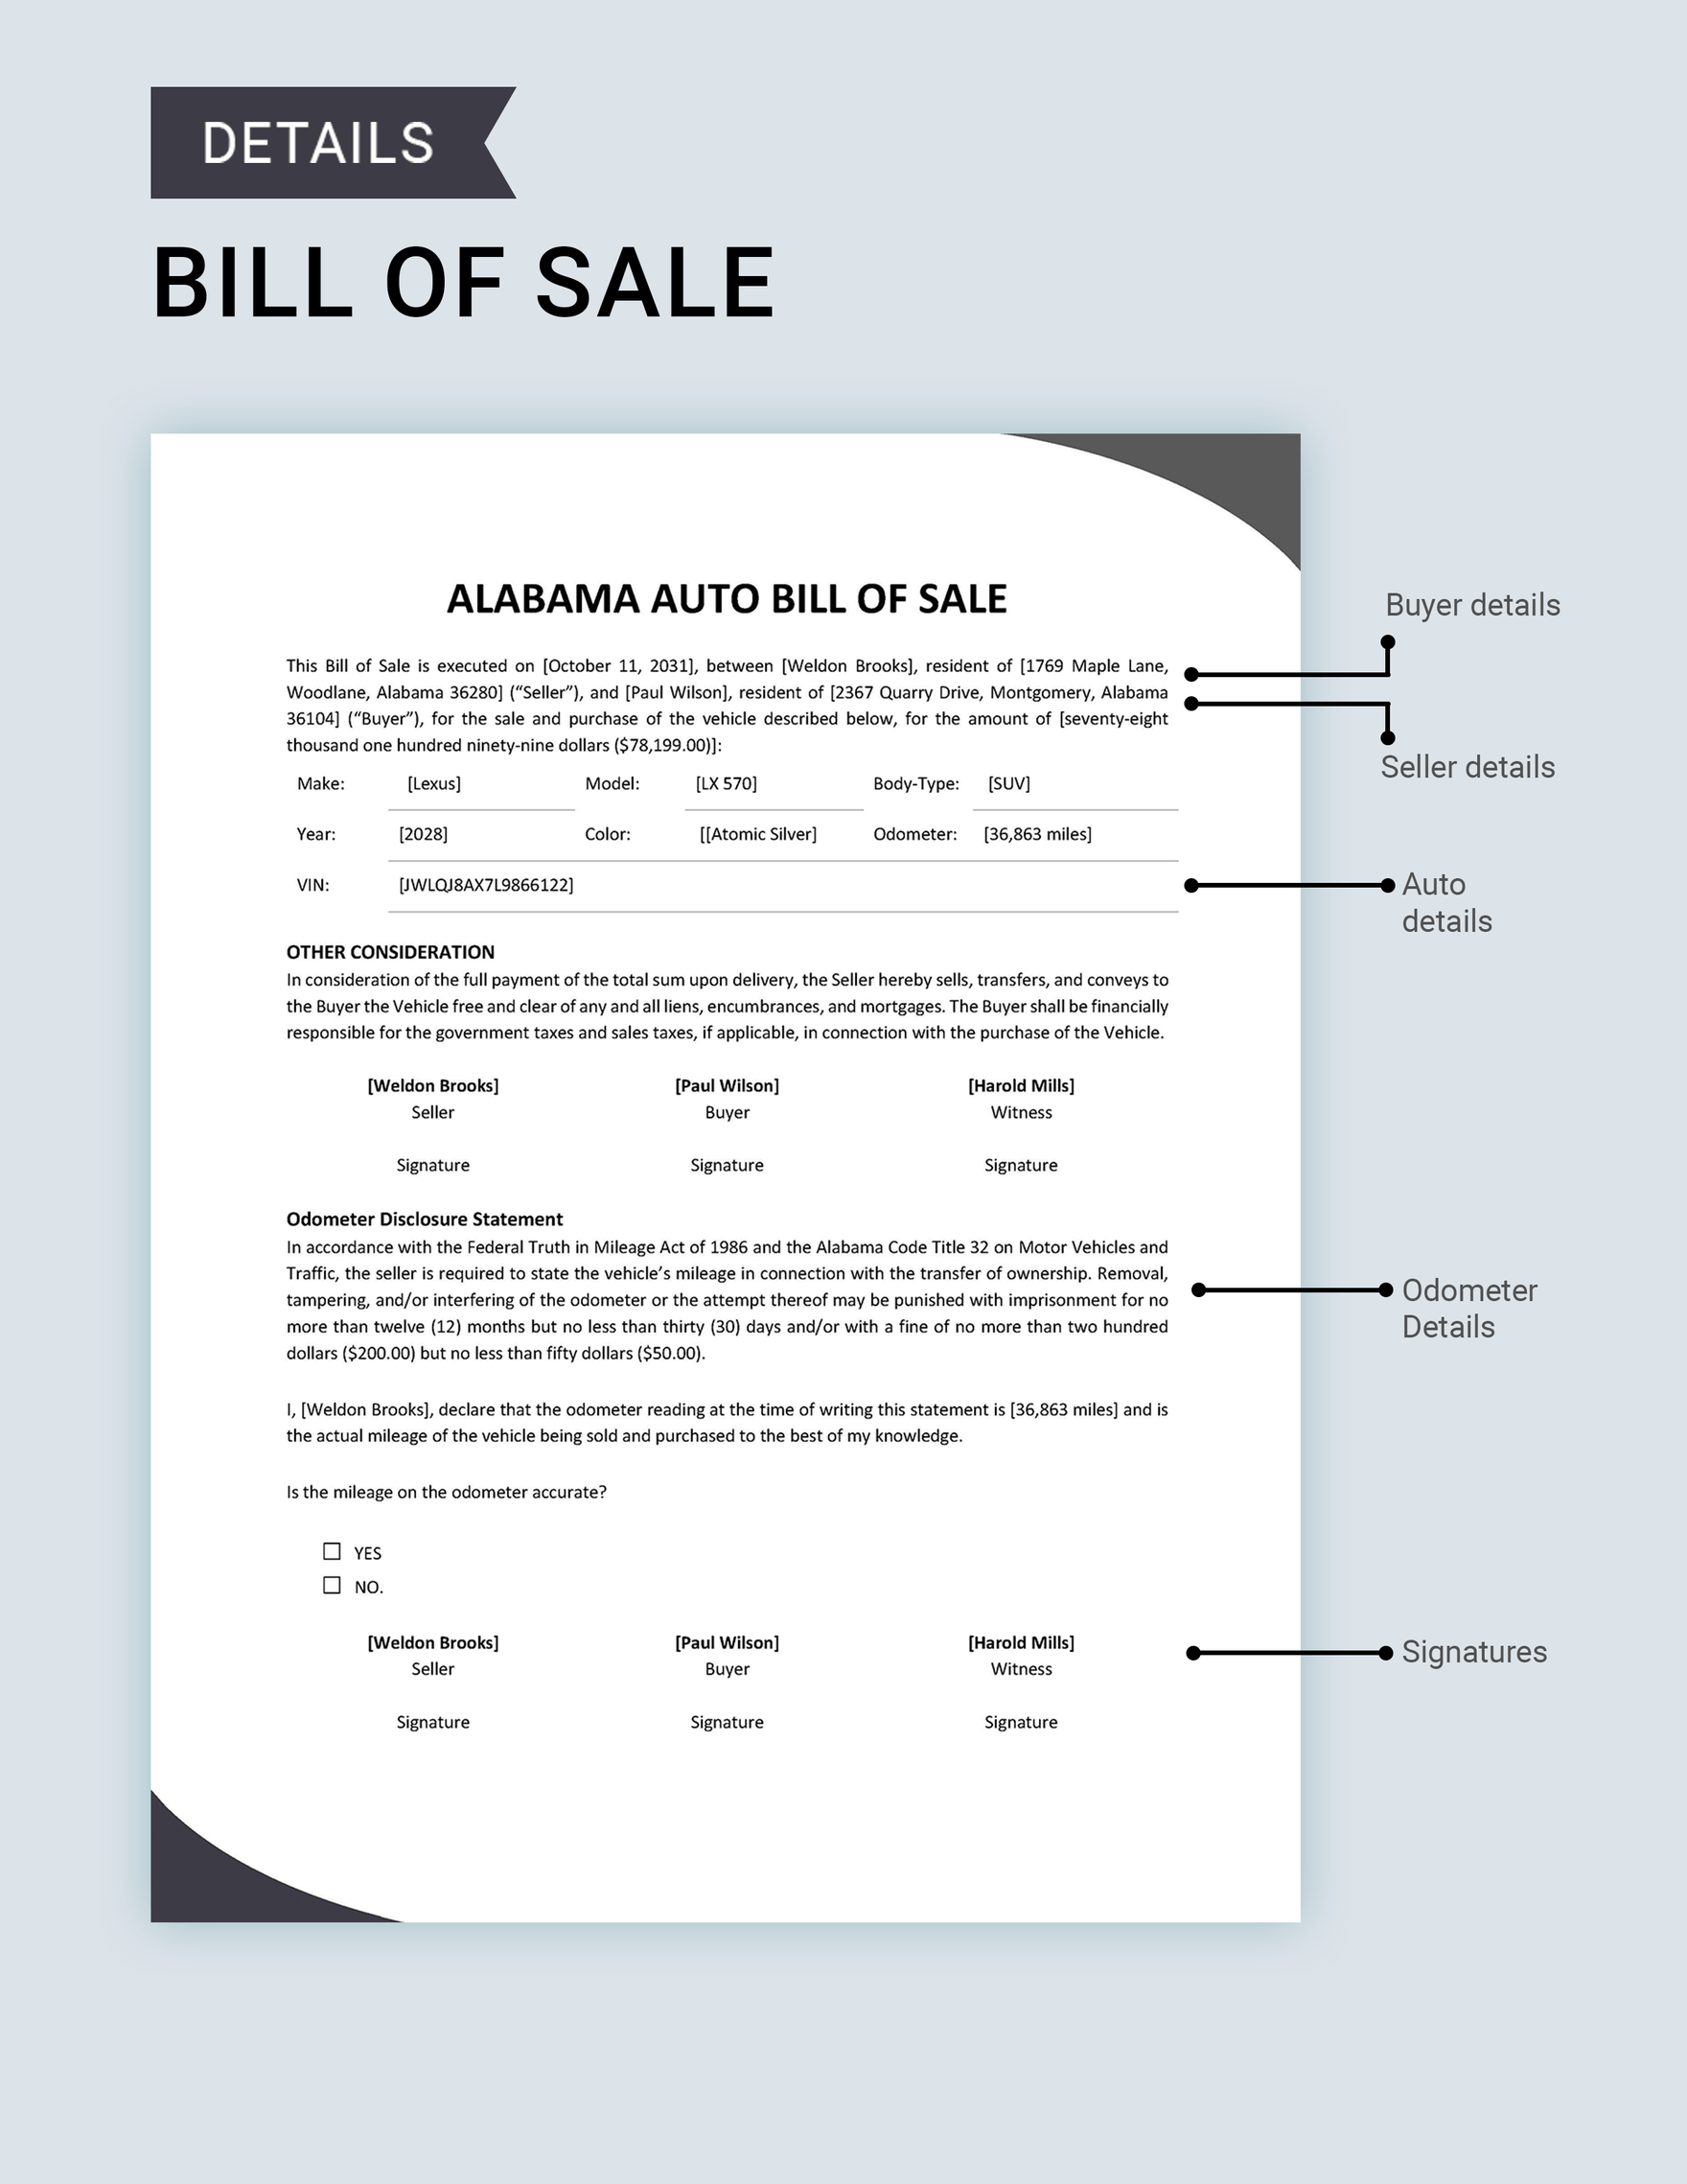 Alabama Auto Bill of Sale Template